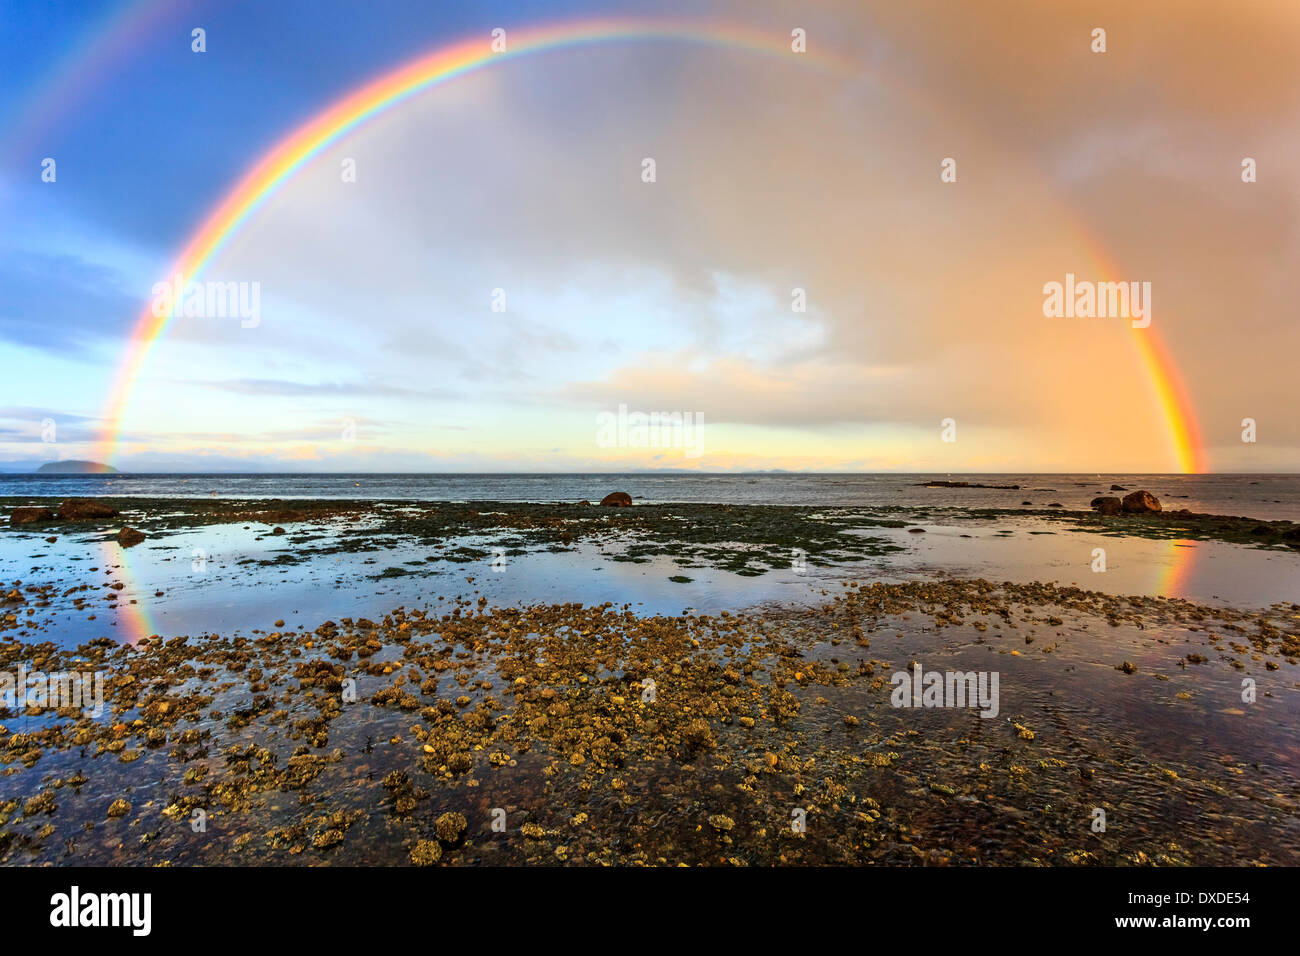 Un doble arco iris se refleja en las pozas de agua en una playa de la costa oeste. Foto de stock